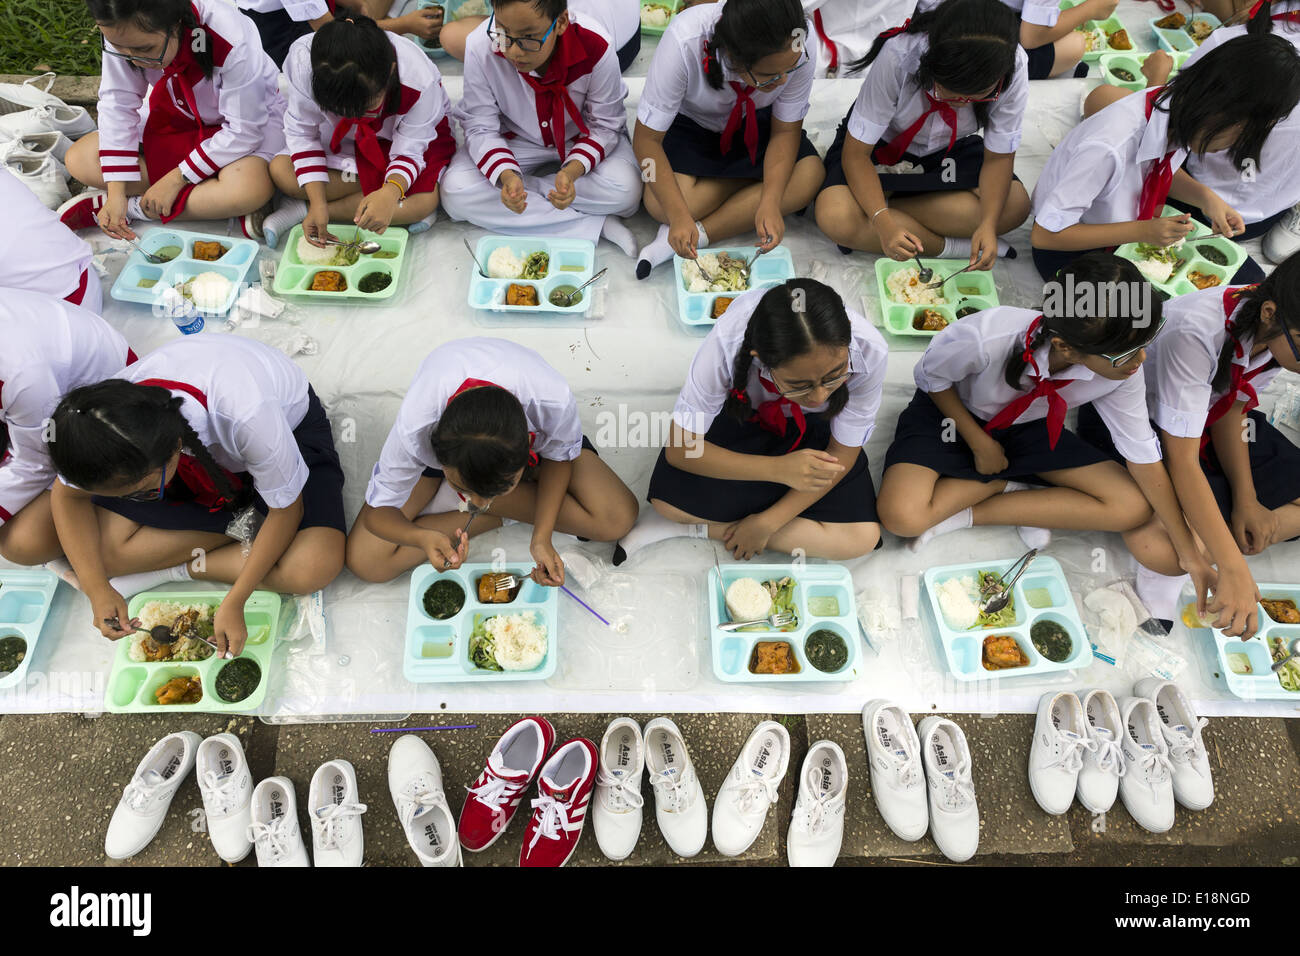 Les enfants de l'école s'asseoir pour manger après un concours des défilés. Banque D'Images